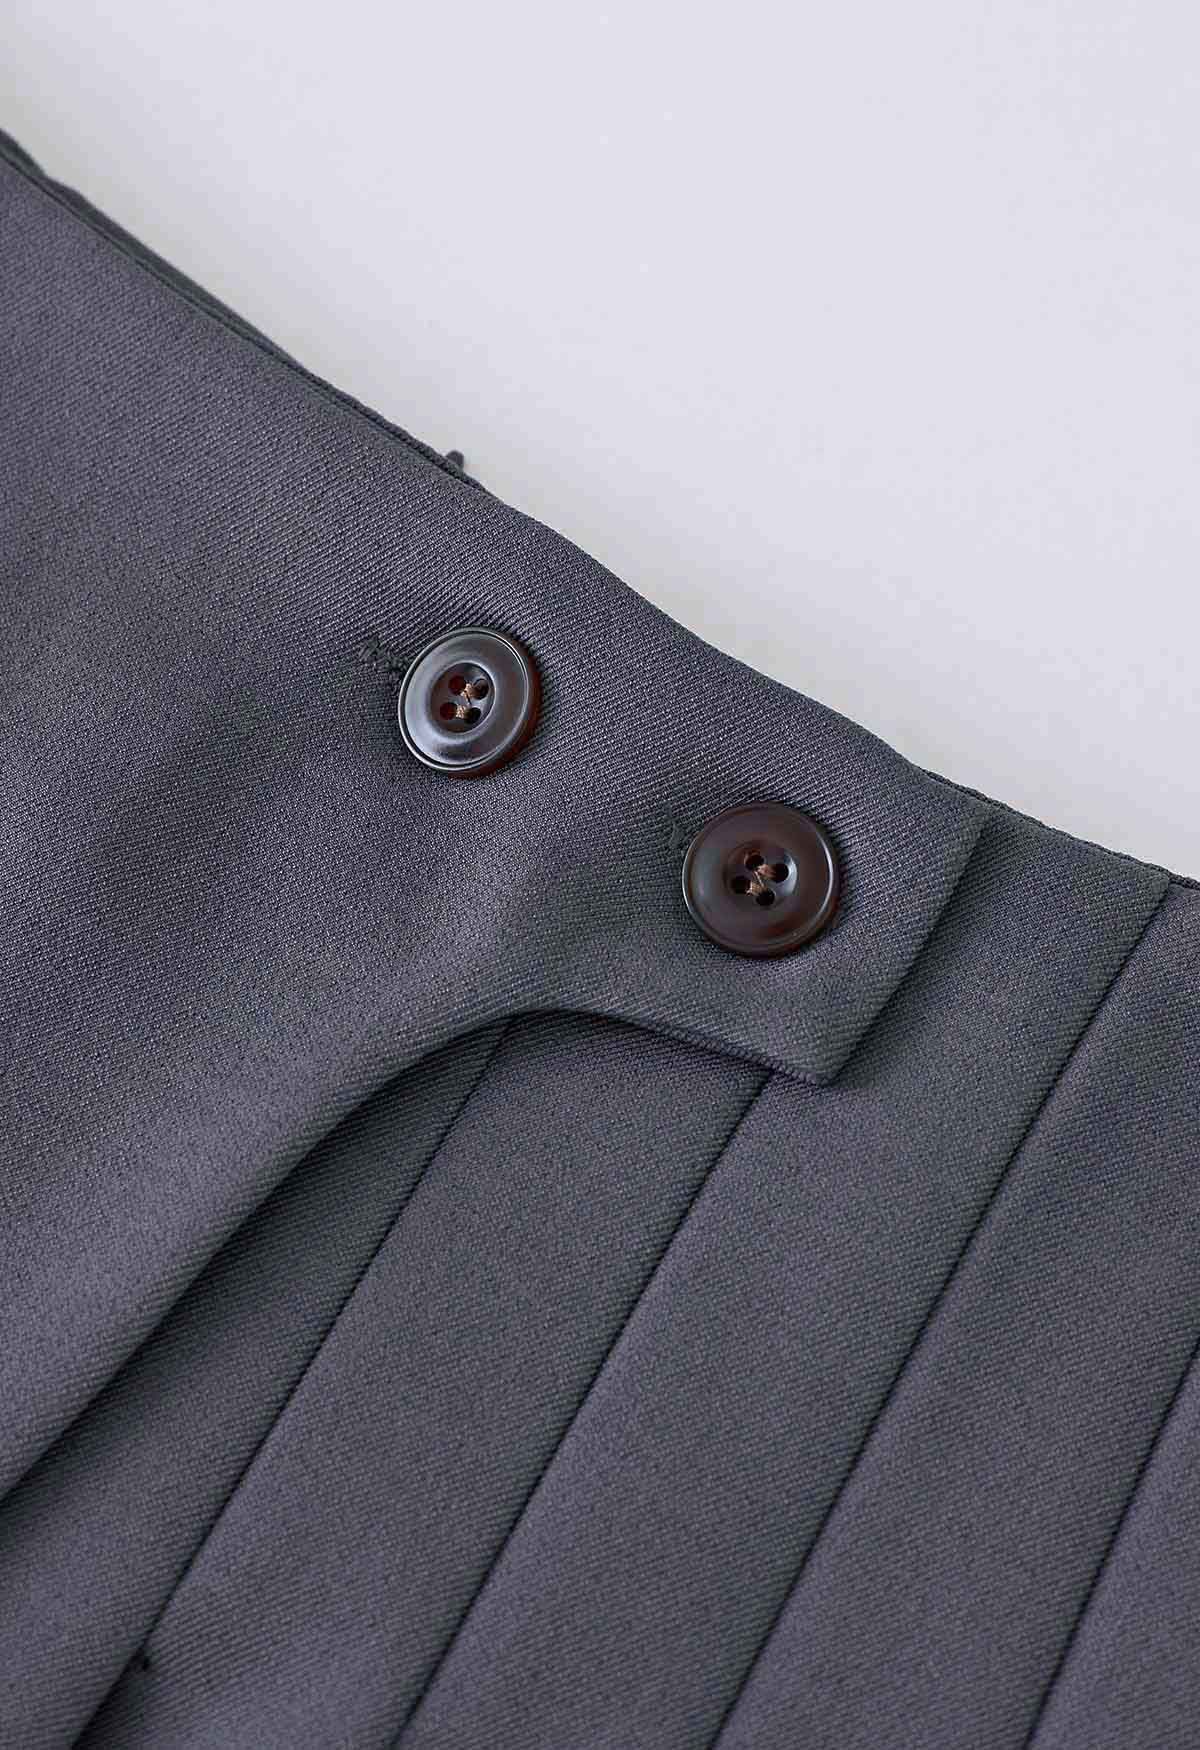 Mini-jupe plissée à deux boutons en gris